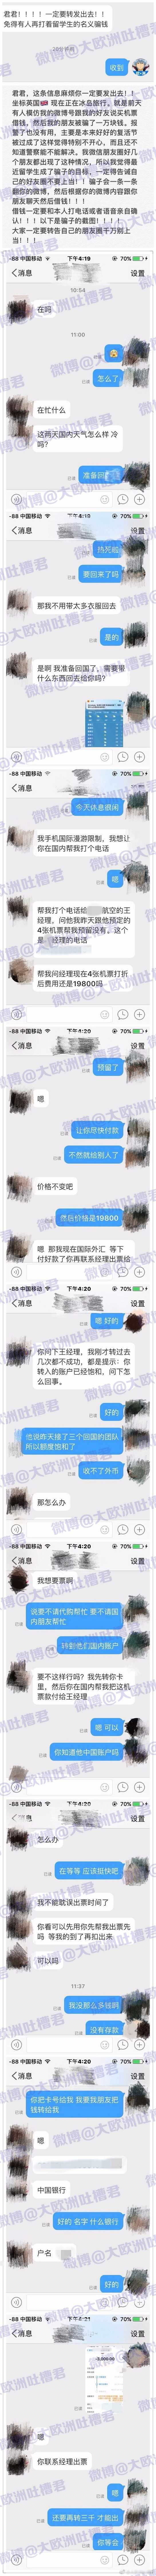 WeChat Image_20170401220640.jpg